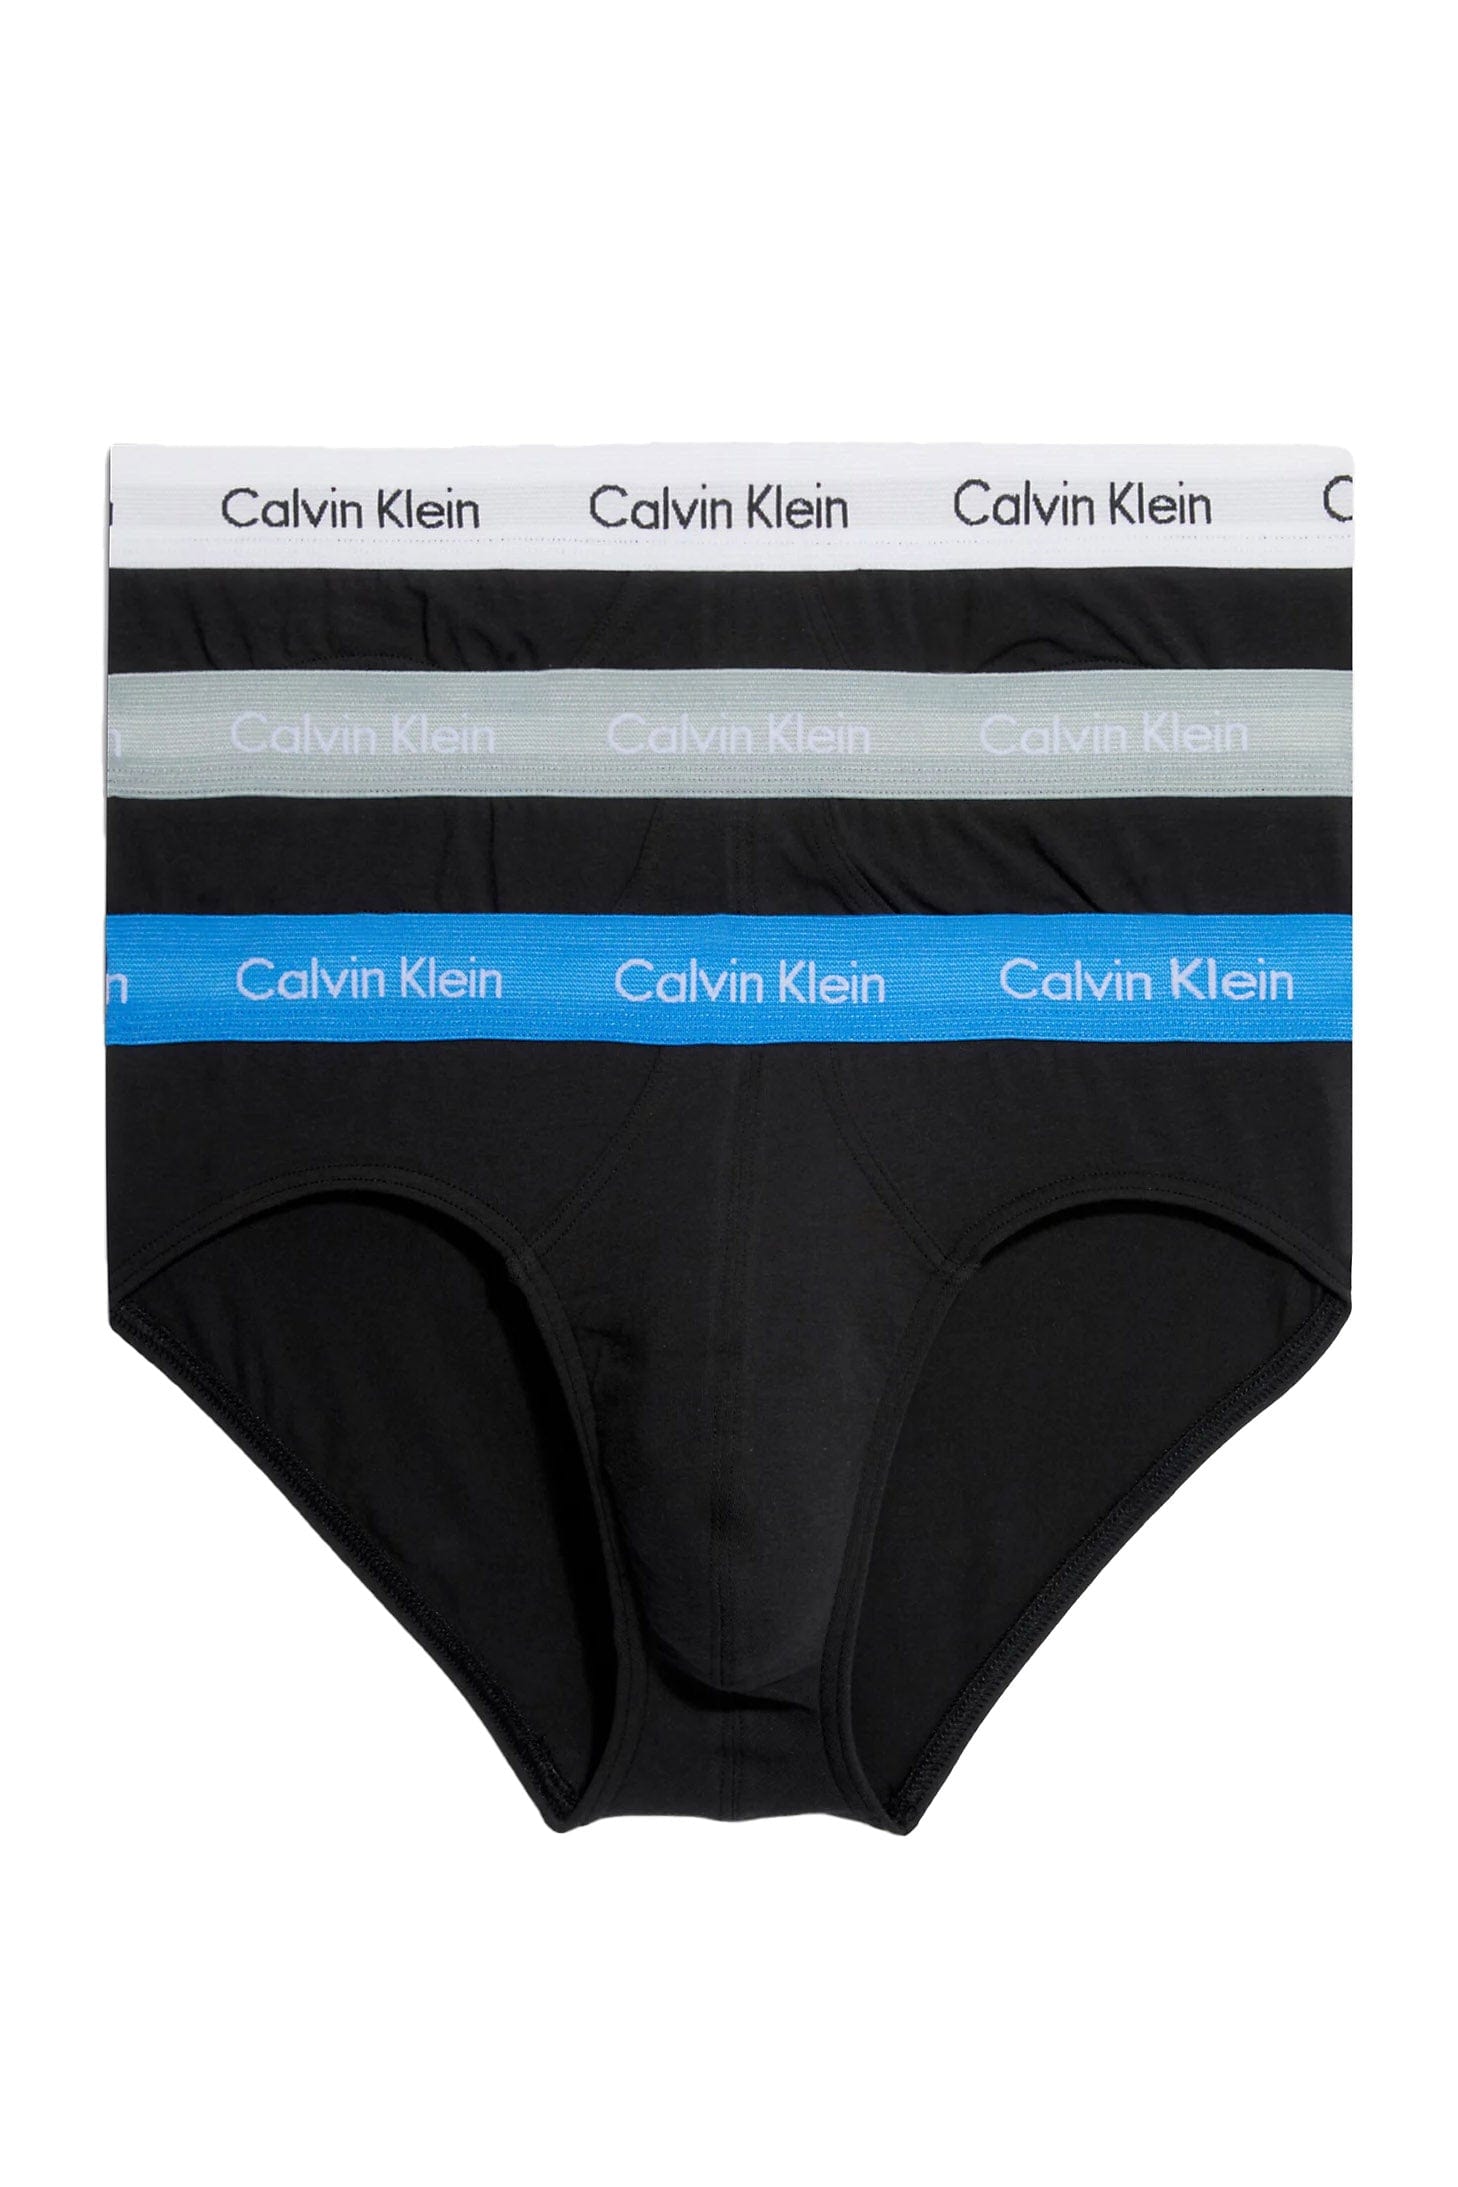 Calvin Klein Cotton Stretch Hip Briefs 3 Pack